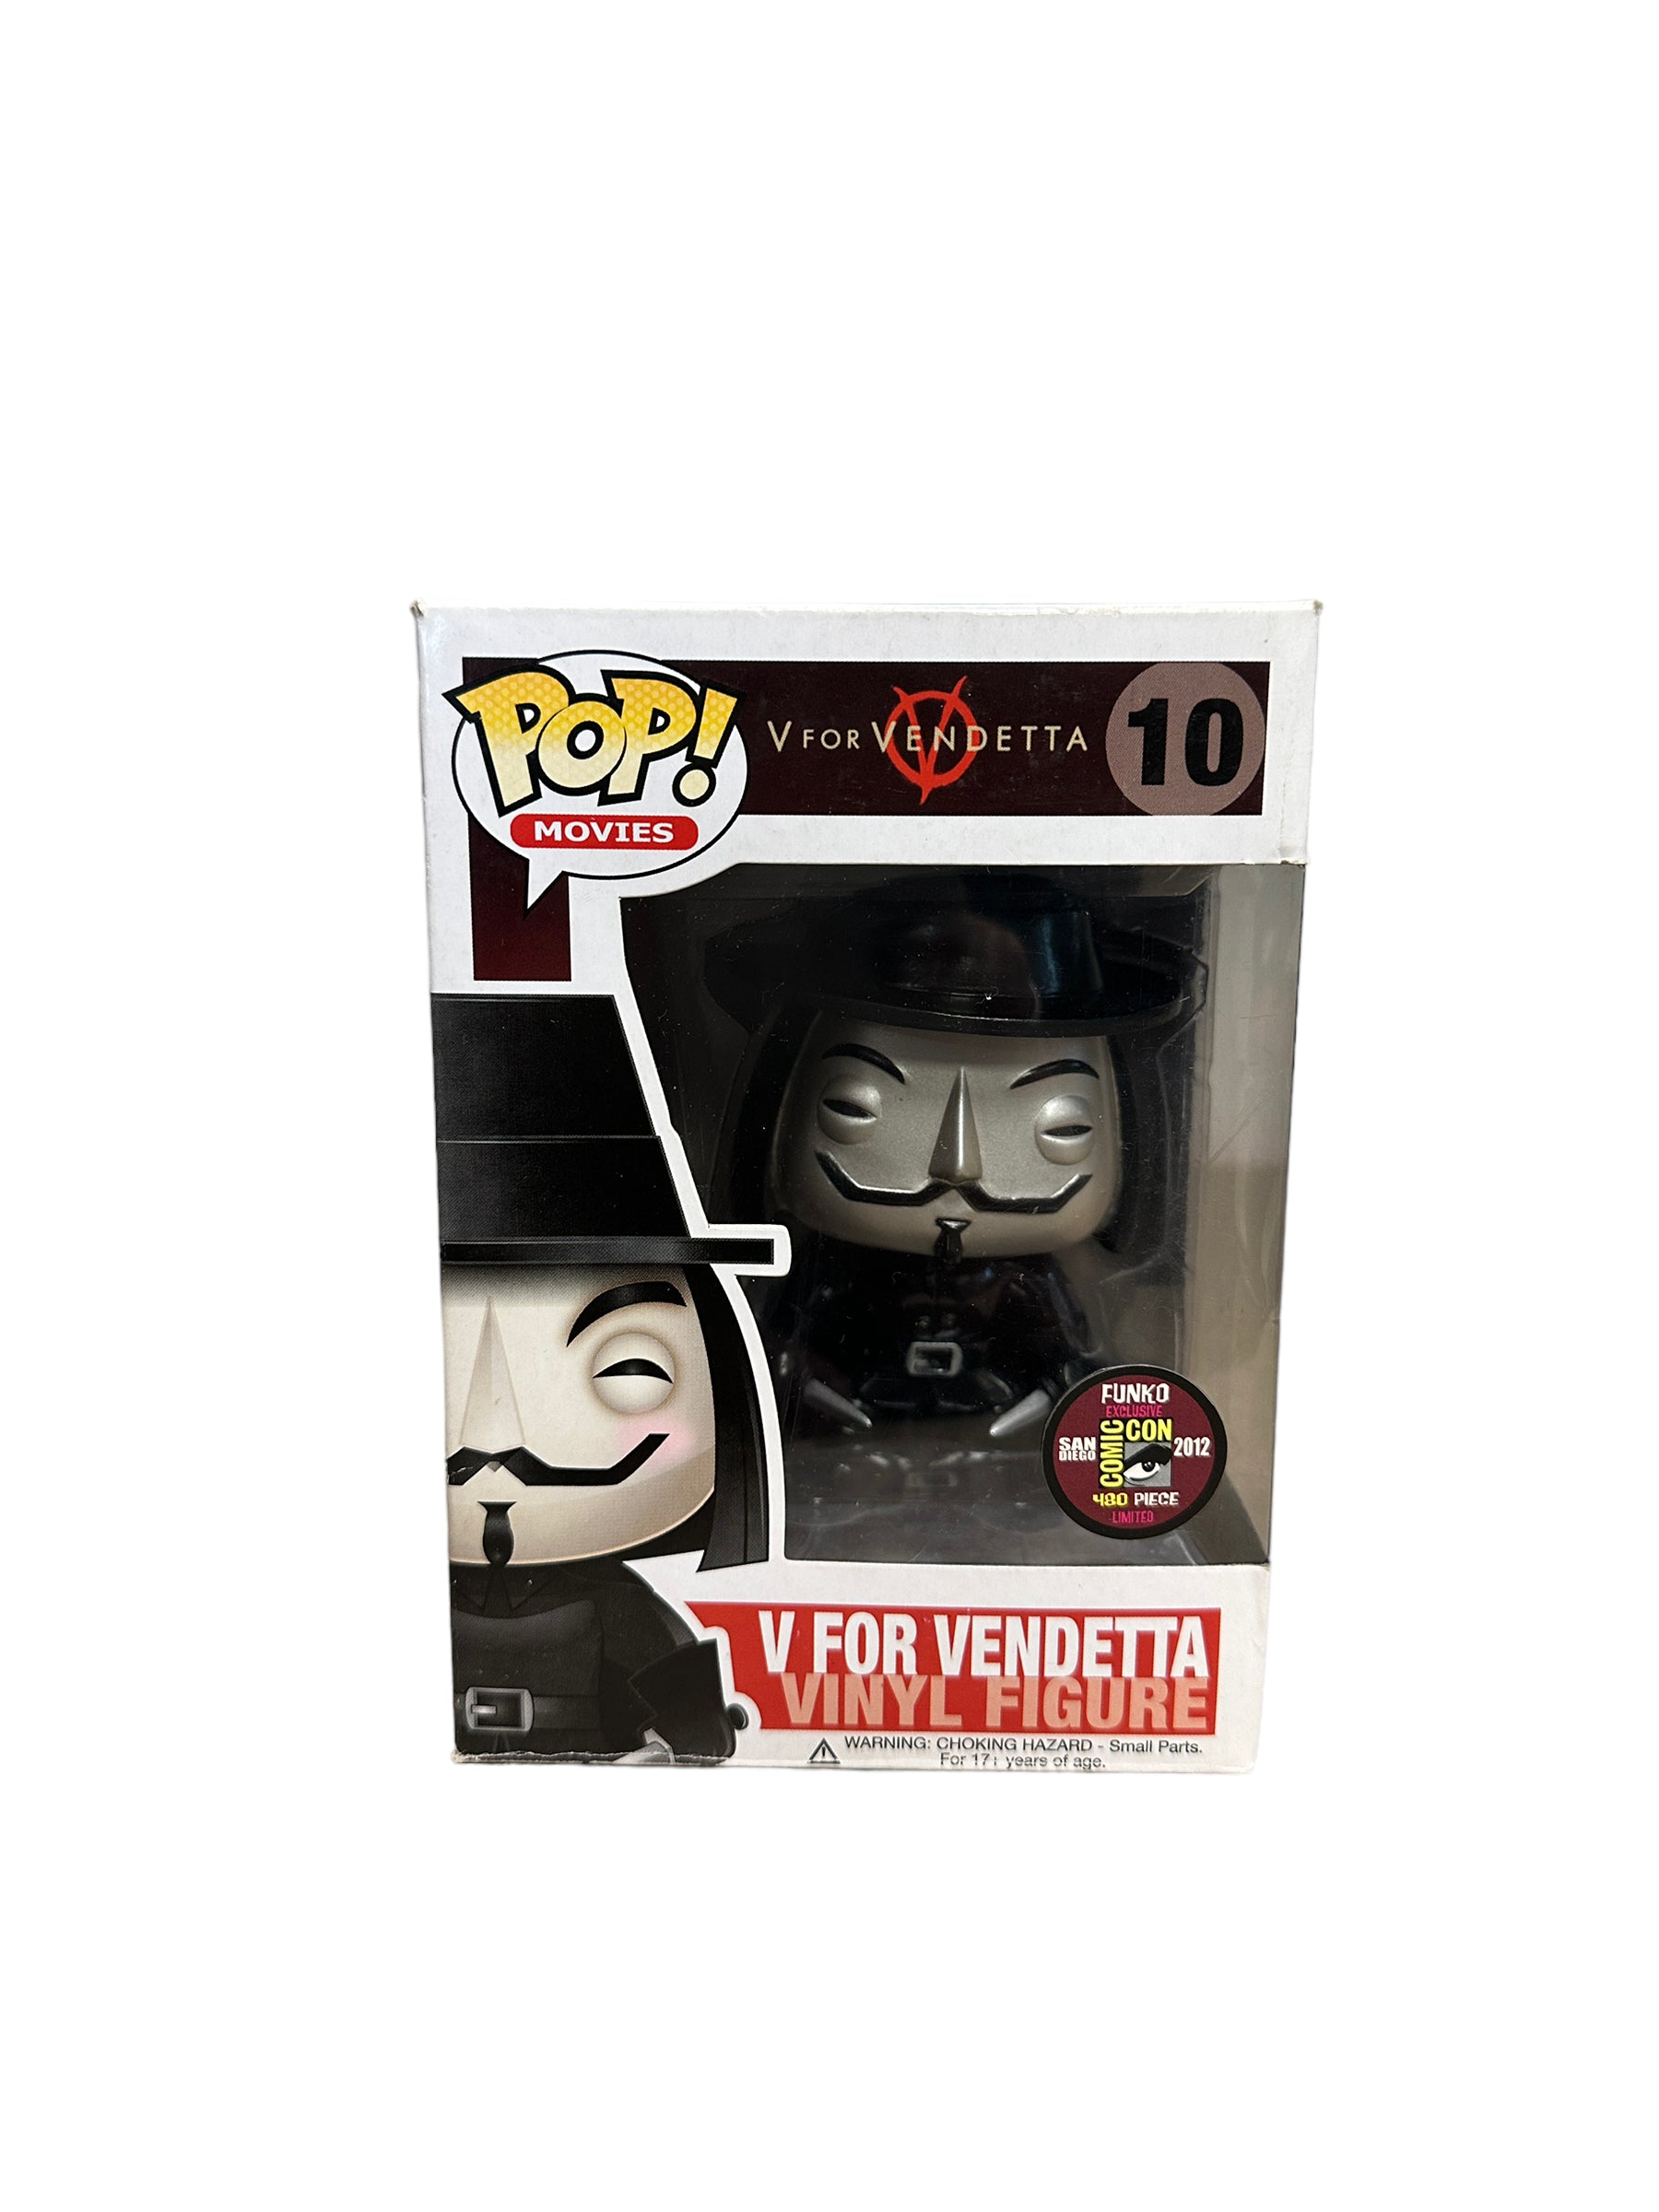 V For Vendetta #10 (Metallic) Funko Pop! - V For Vendetta - SDCC 2012 Exclusive LE480 Pcs - Condition 6.5/10